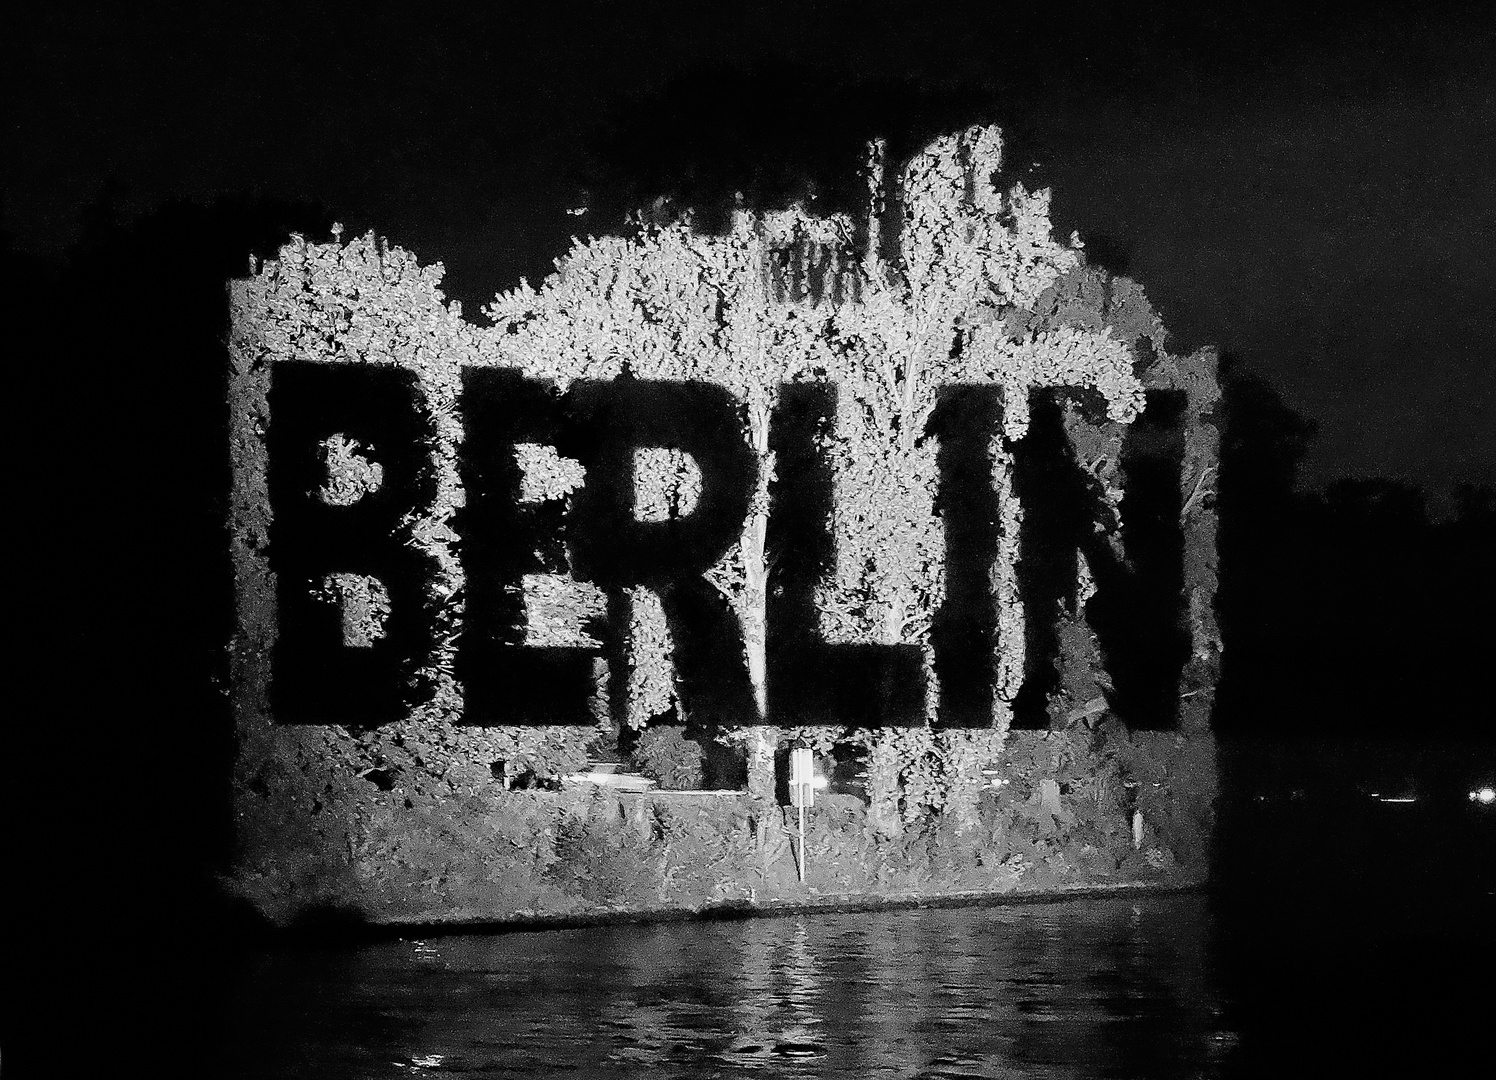 Berlin, dit is meene Stadt